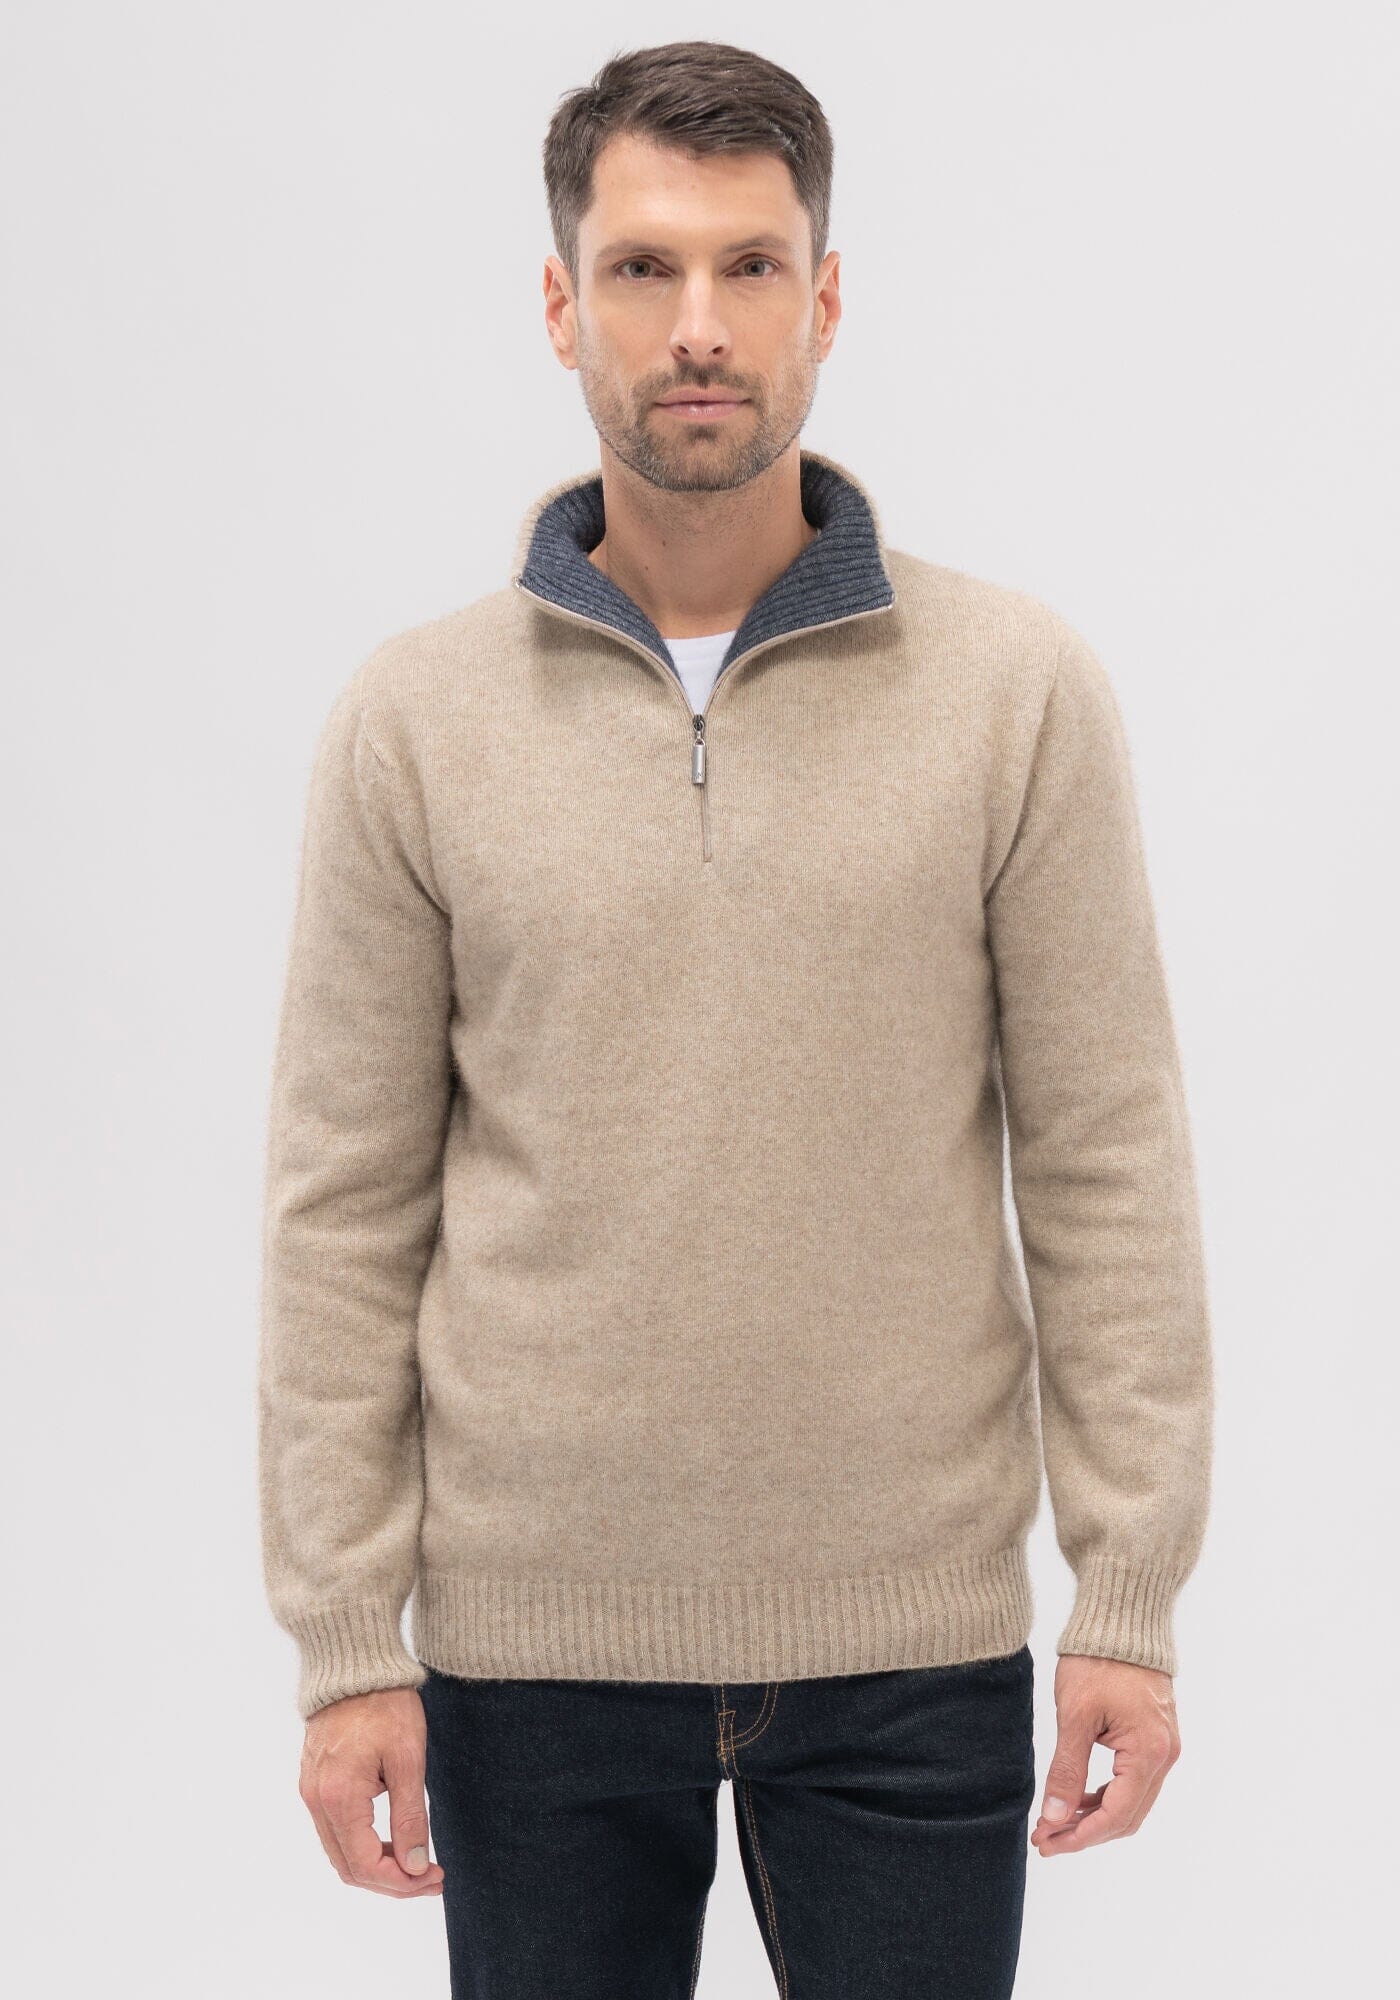 Contrast Half Zip Sweater Mens Sweater Merinomink 